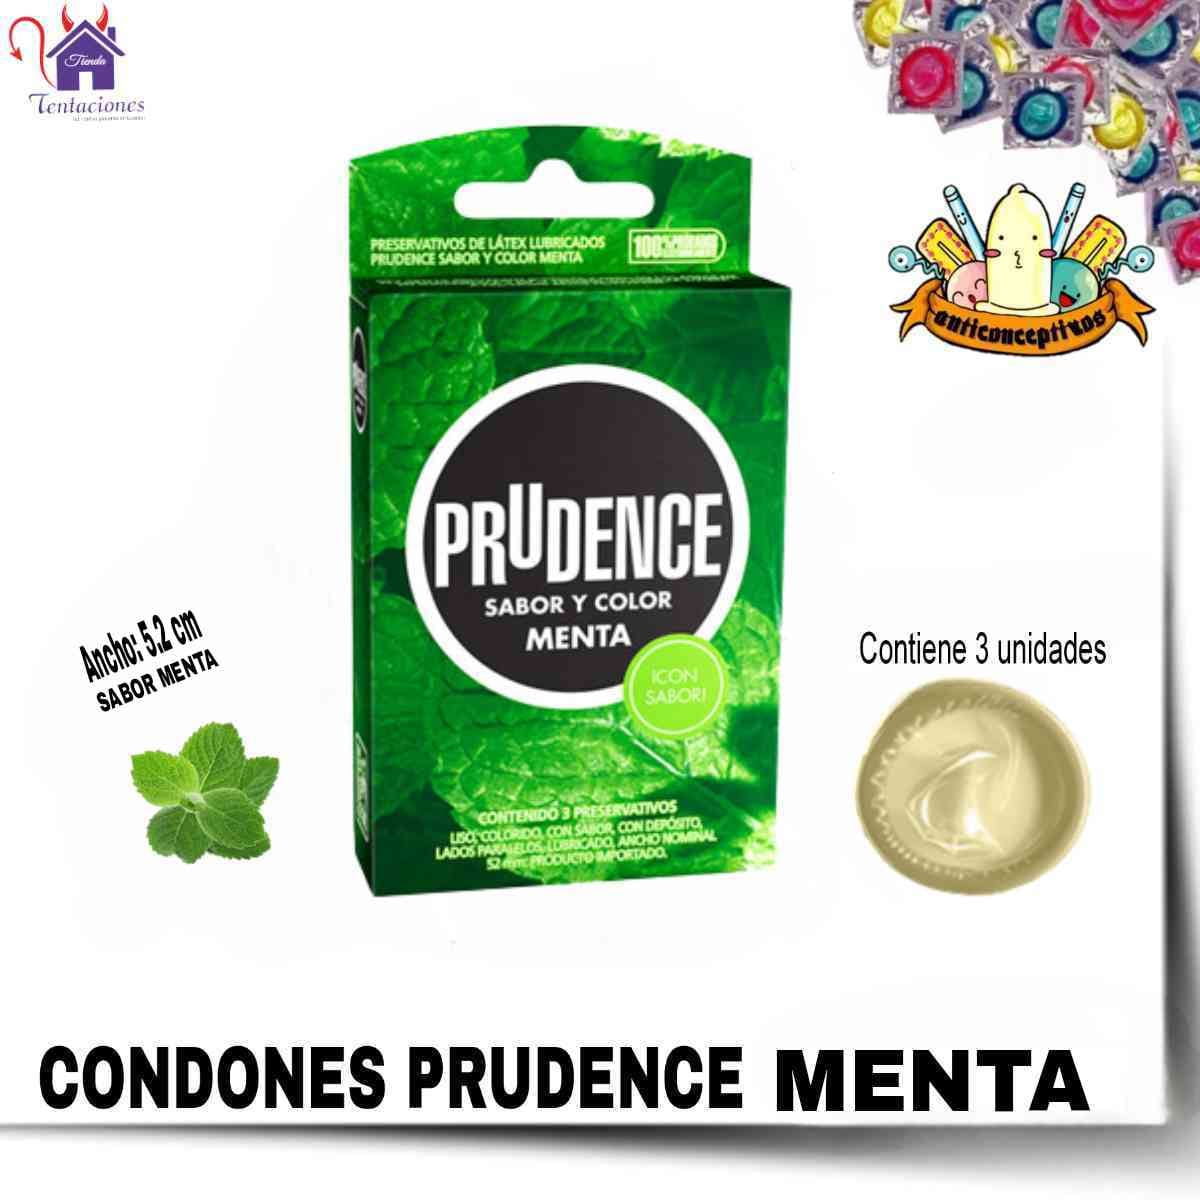 Condones Prudence Menta-Tienda Tentaciones-Sex Shop Ecuador